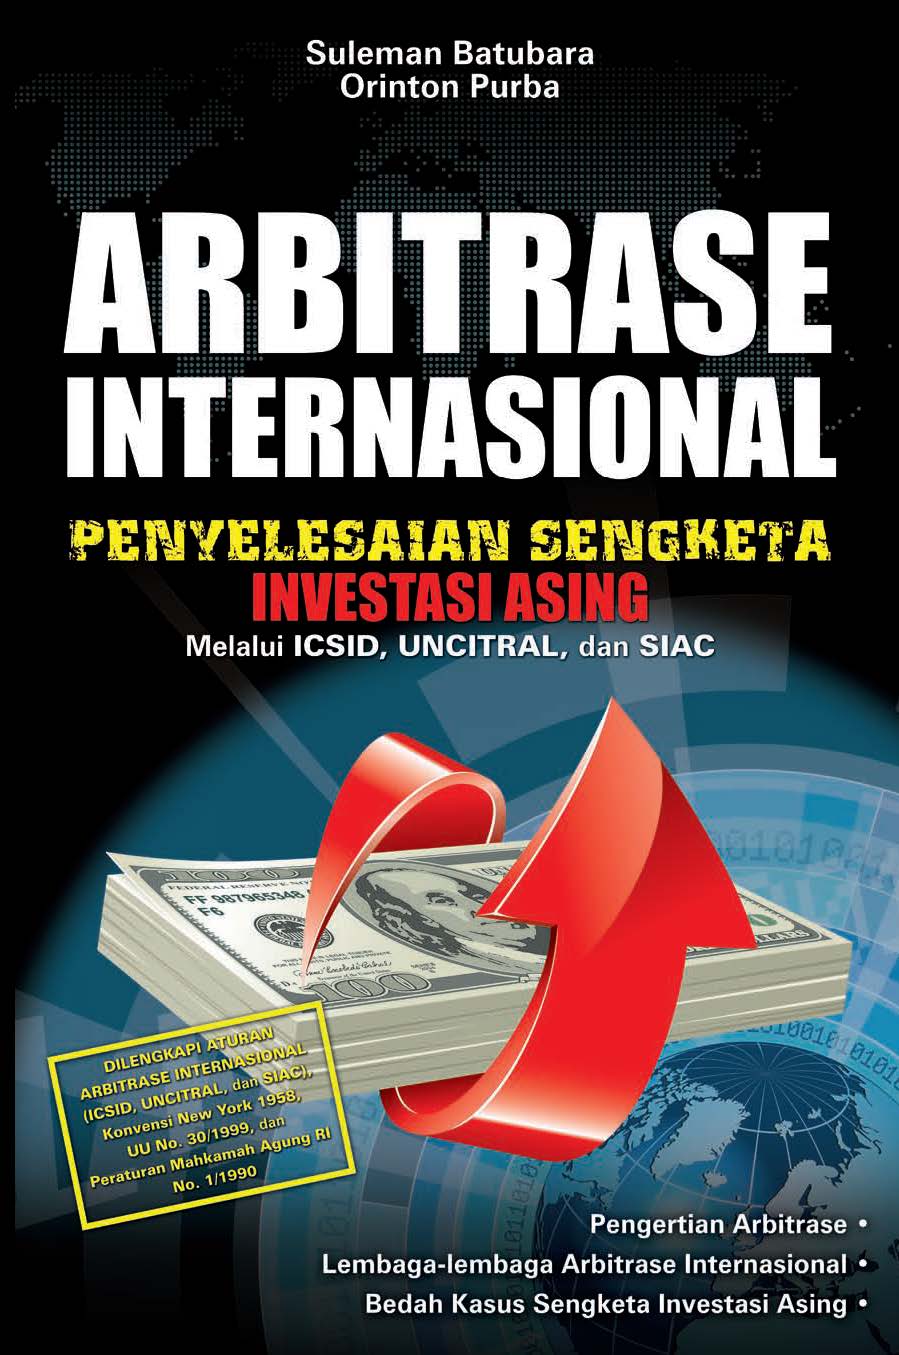 Arbitrase internasional [ sumber elektronis ] : Penyelesaian sengketa investasi asing melalui ICSID, UNCITRAL, dan SIAC